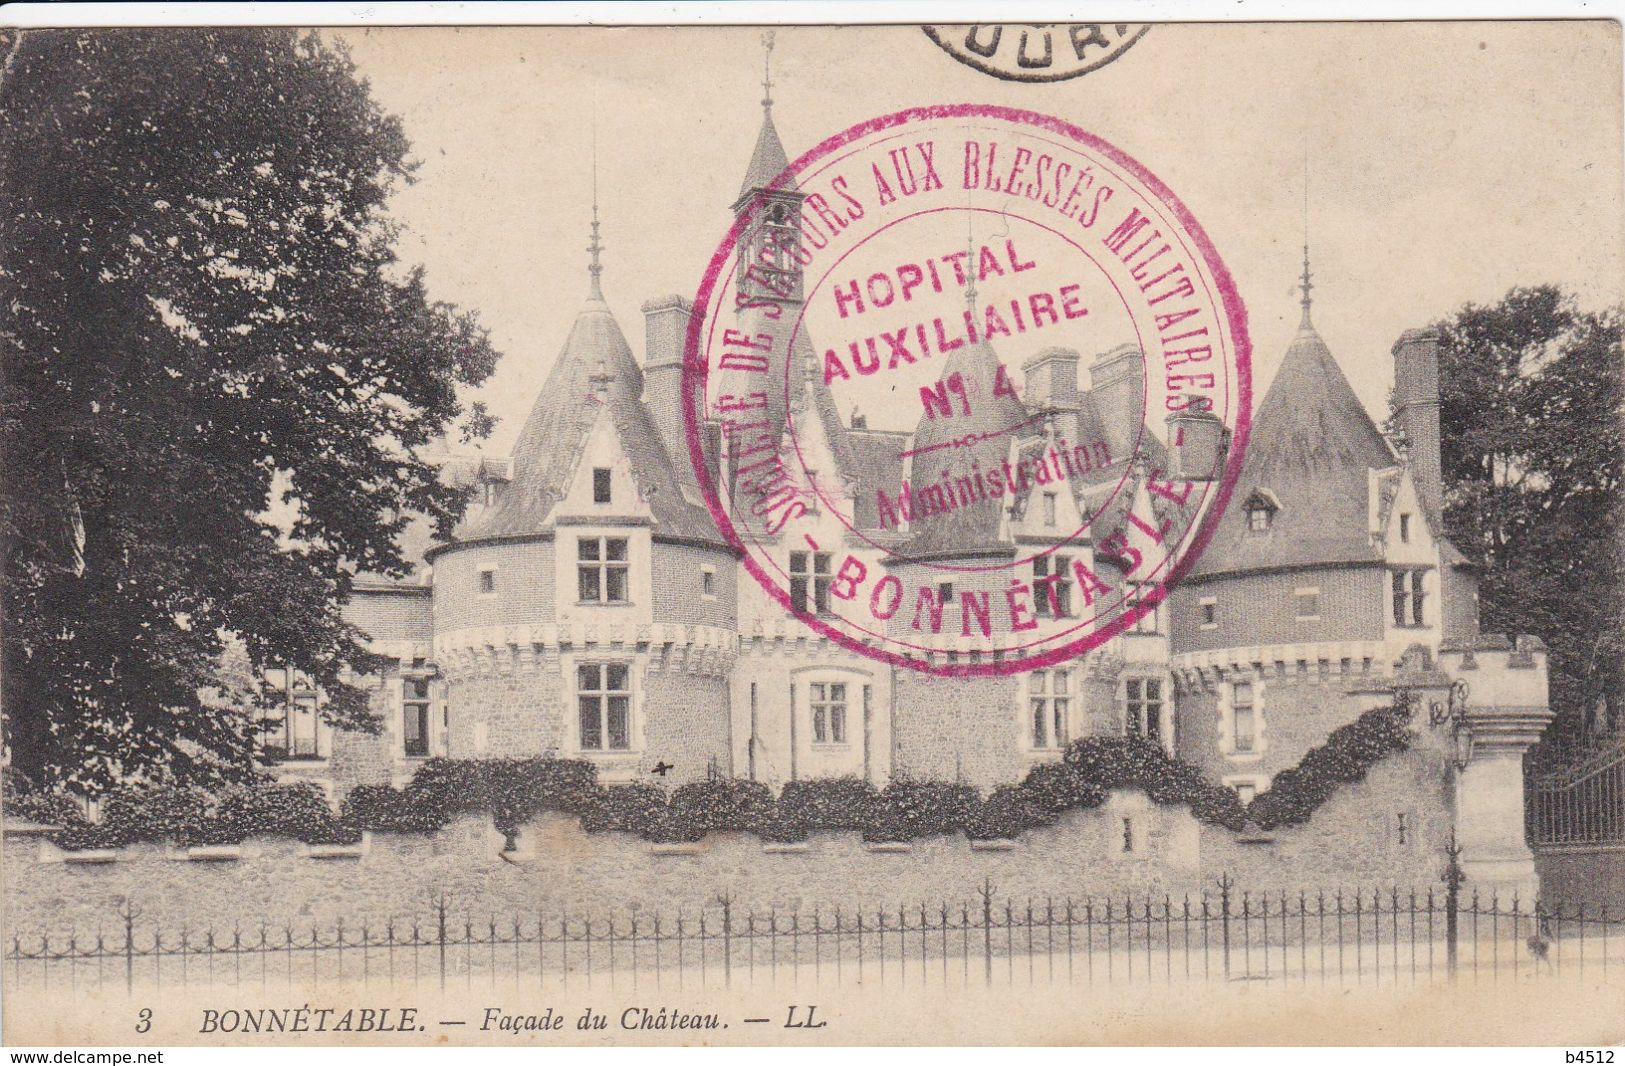 72 BONNETABLE Façade Du Château , Marcophilie Tampon Hôpital Militaire Auxiliare N° 14,société De Secours Aux Blessés - Bonnetable